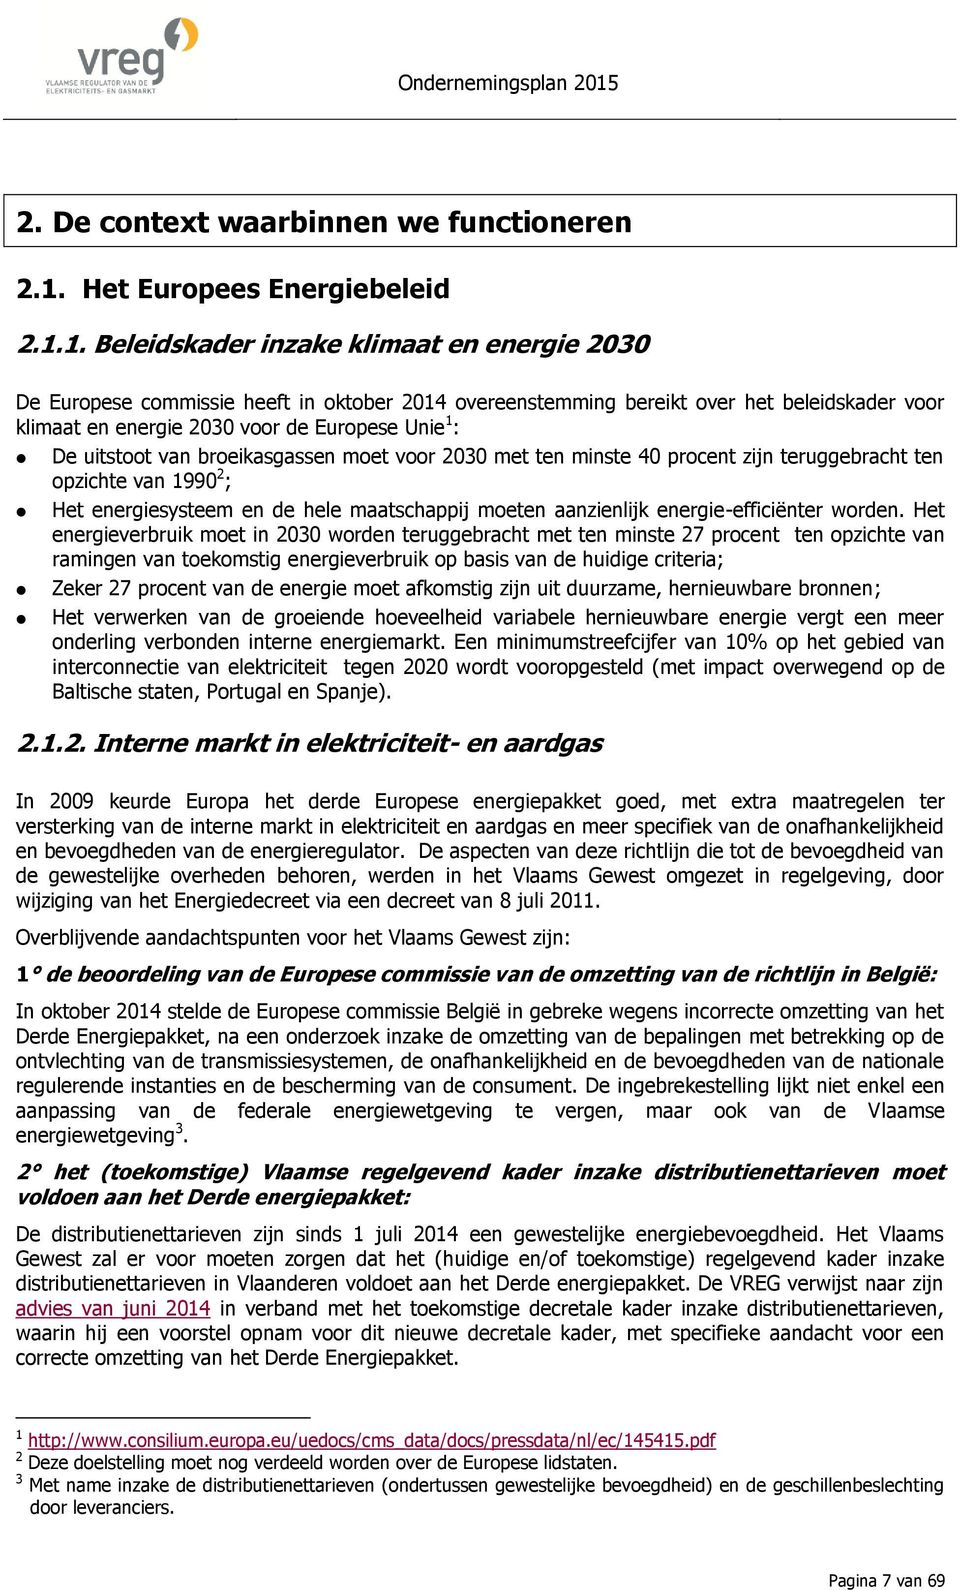 1. Beleidskader inzake klimaat ergie 2030 De Europese commissie heeft in oktober 2014 overestemming bereikt over het beleidskader voor klimaat ergie 2030 voor de Europese Unie 1 : De uitstoot van